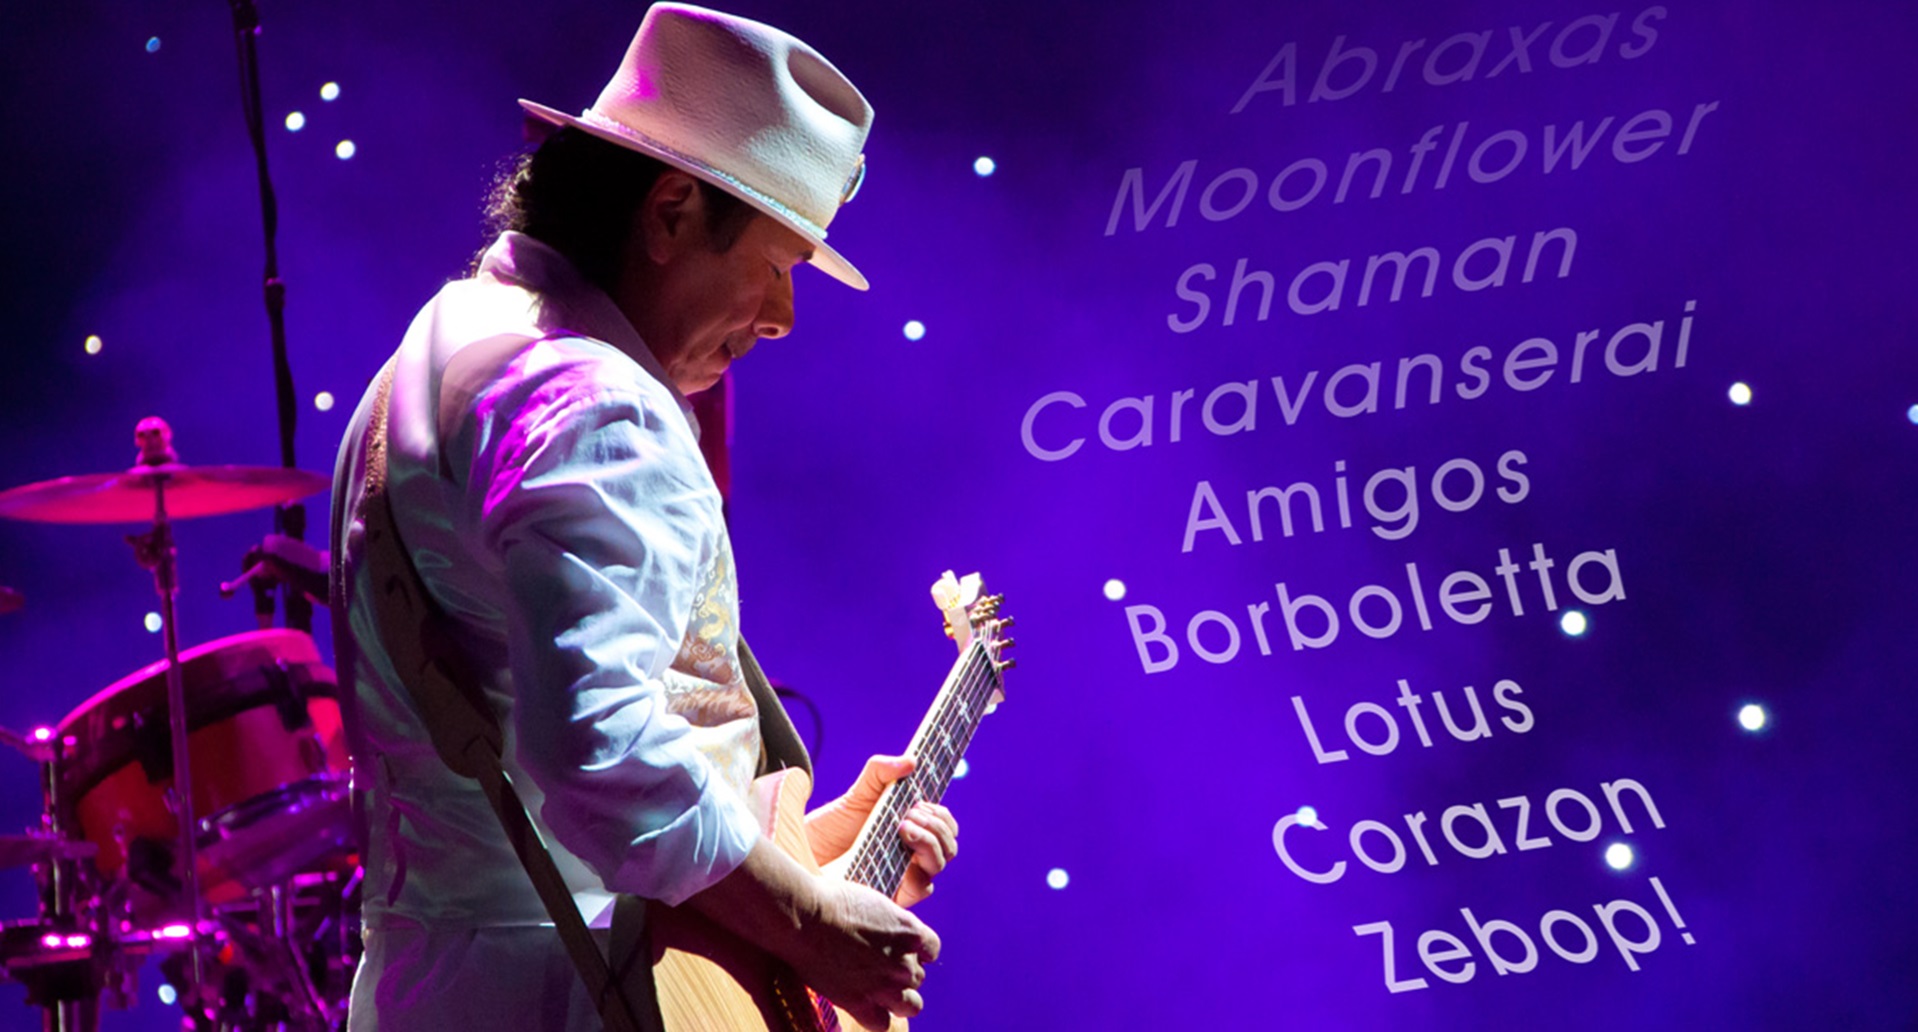 Carols Santana on guitar with song lyrics